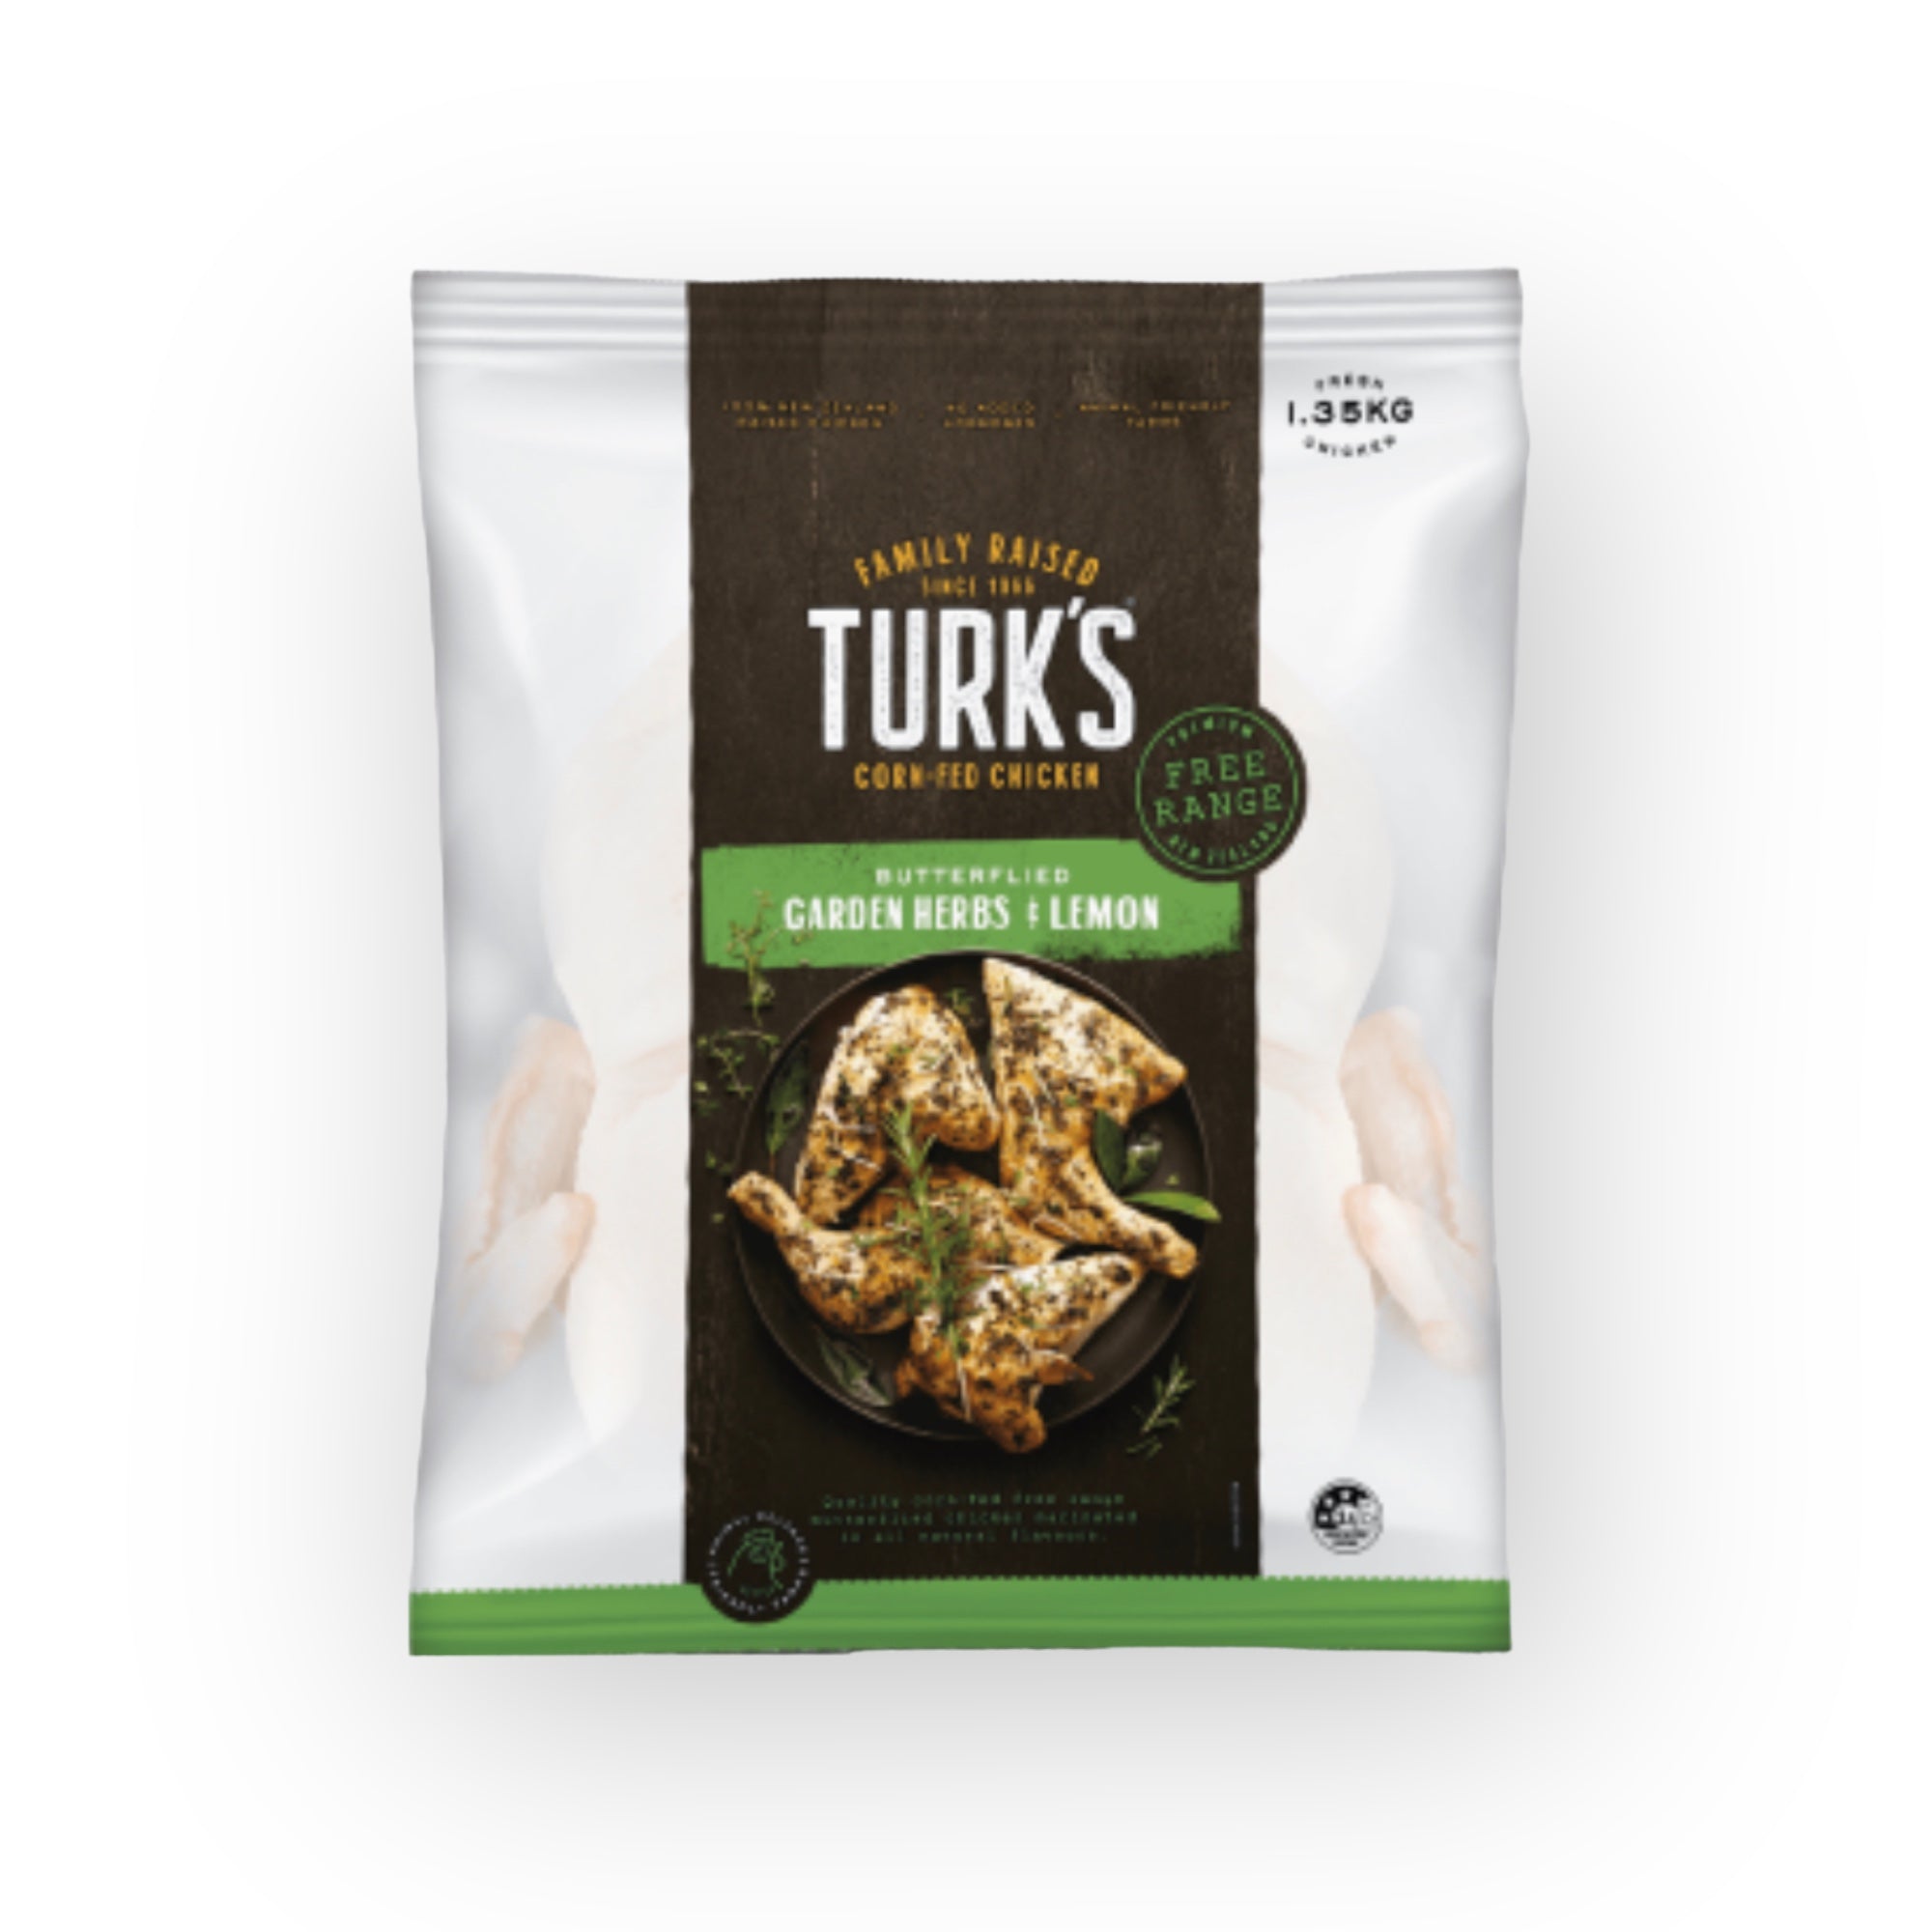 Turk's Free-Range Butterflied Chicken Garden Herb & Lemon 1.35kg (Frozen)